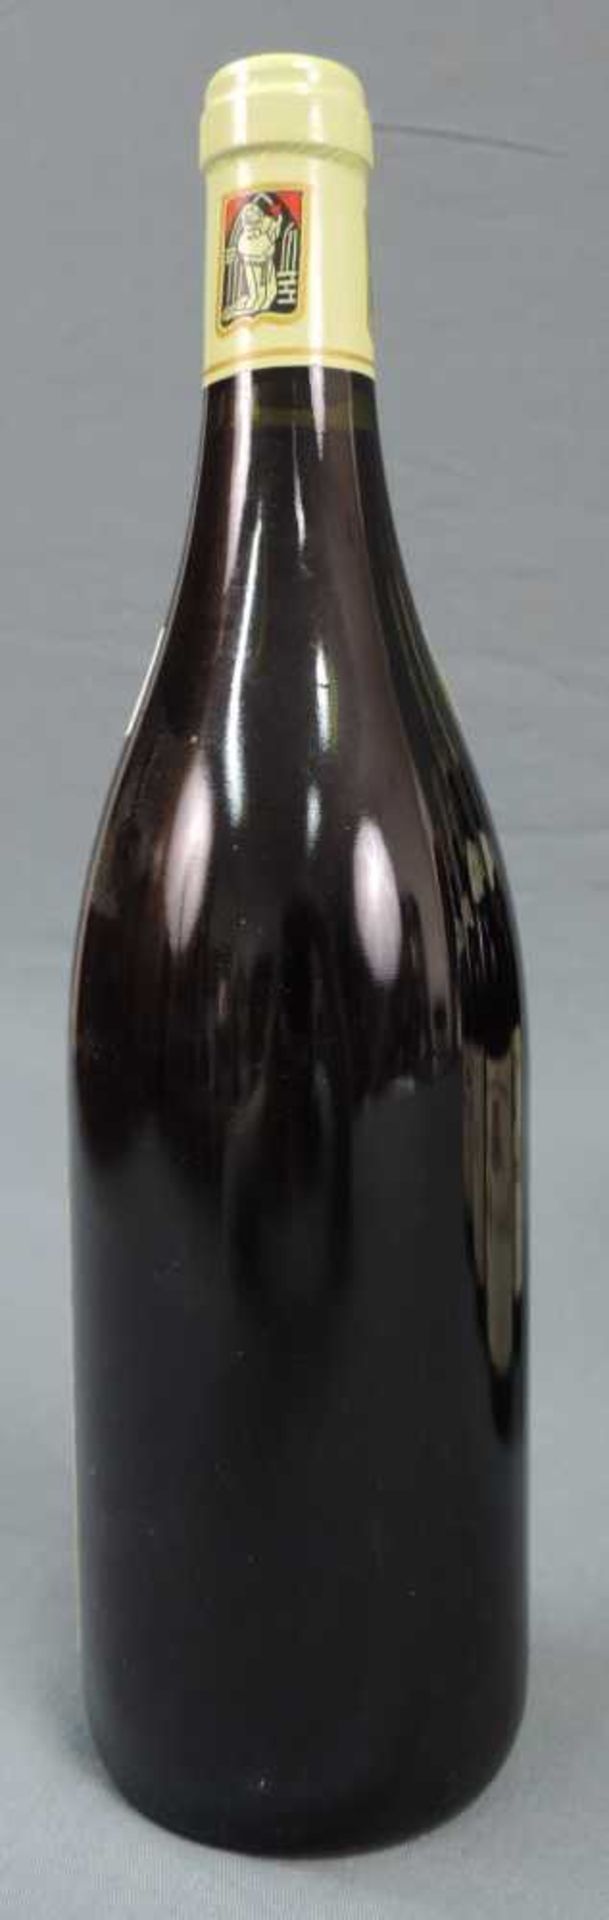 2000 Domaine Prieur - Brunet, Satenay Comme Premier Cru, France. 8 Flaschen, 750 ml, Alc., 13,5% - Bild 6 aus 6